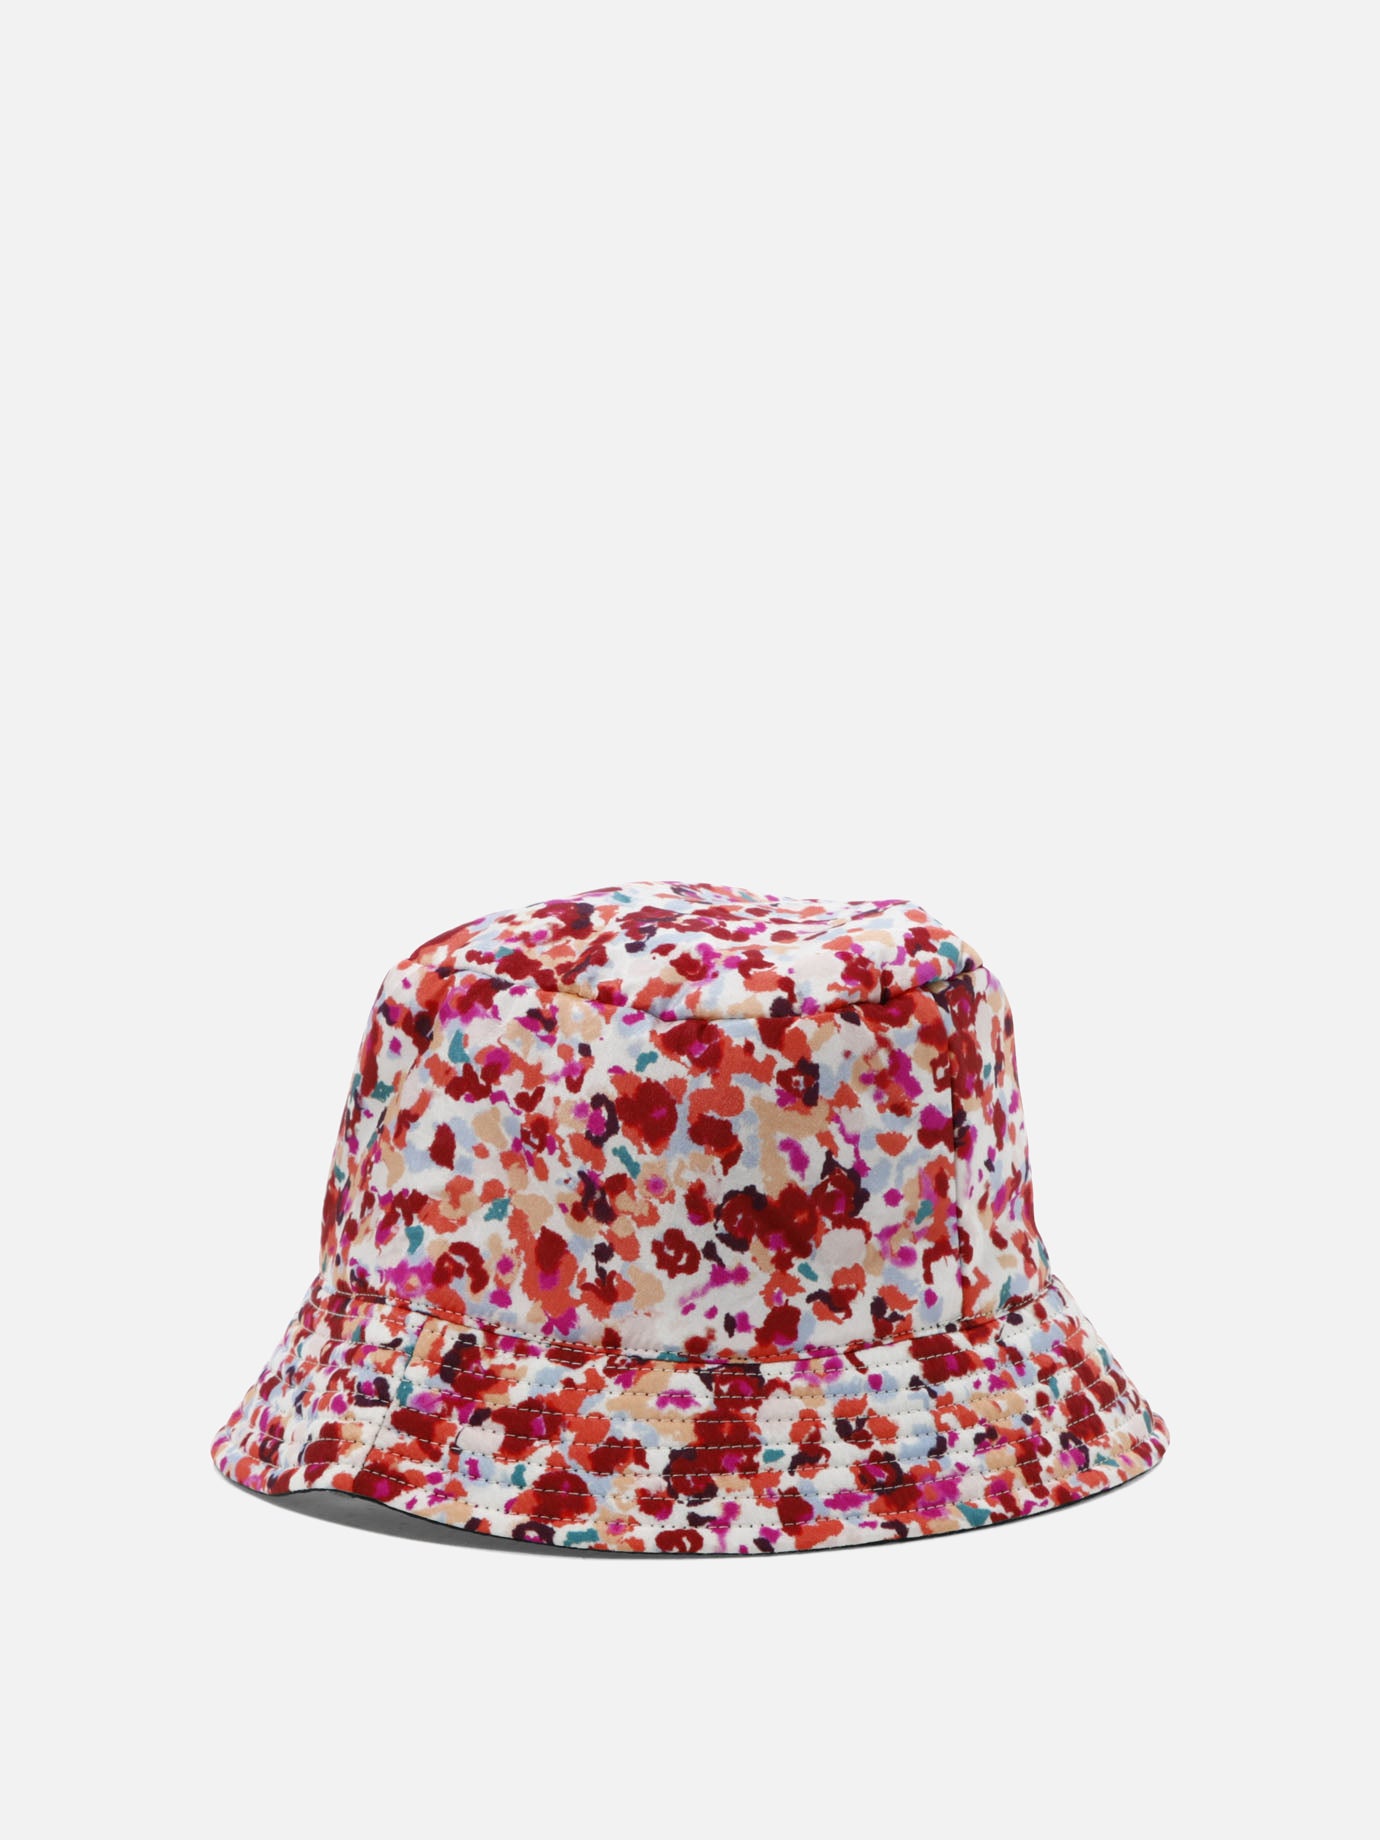 "Haley" reversible bucket hat